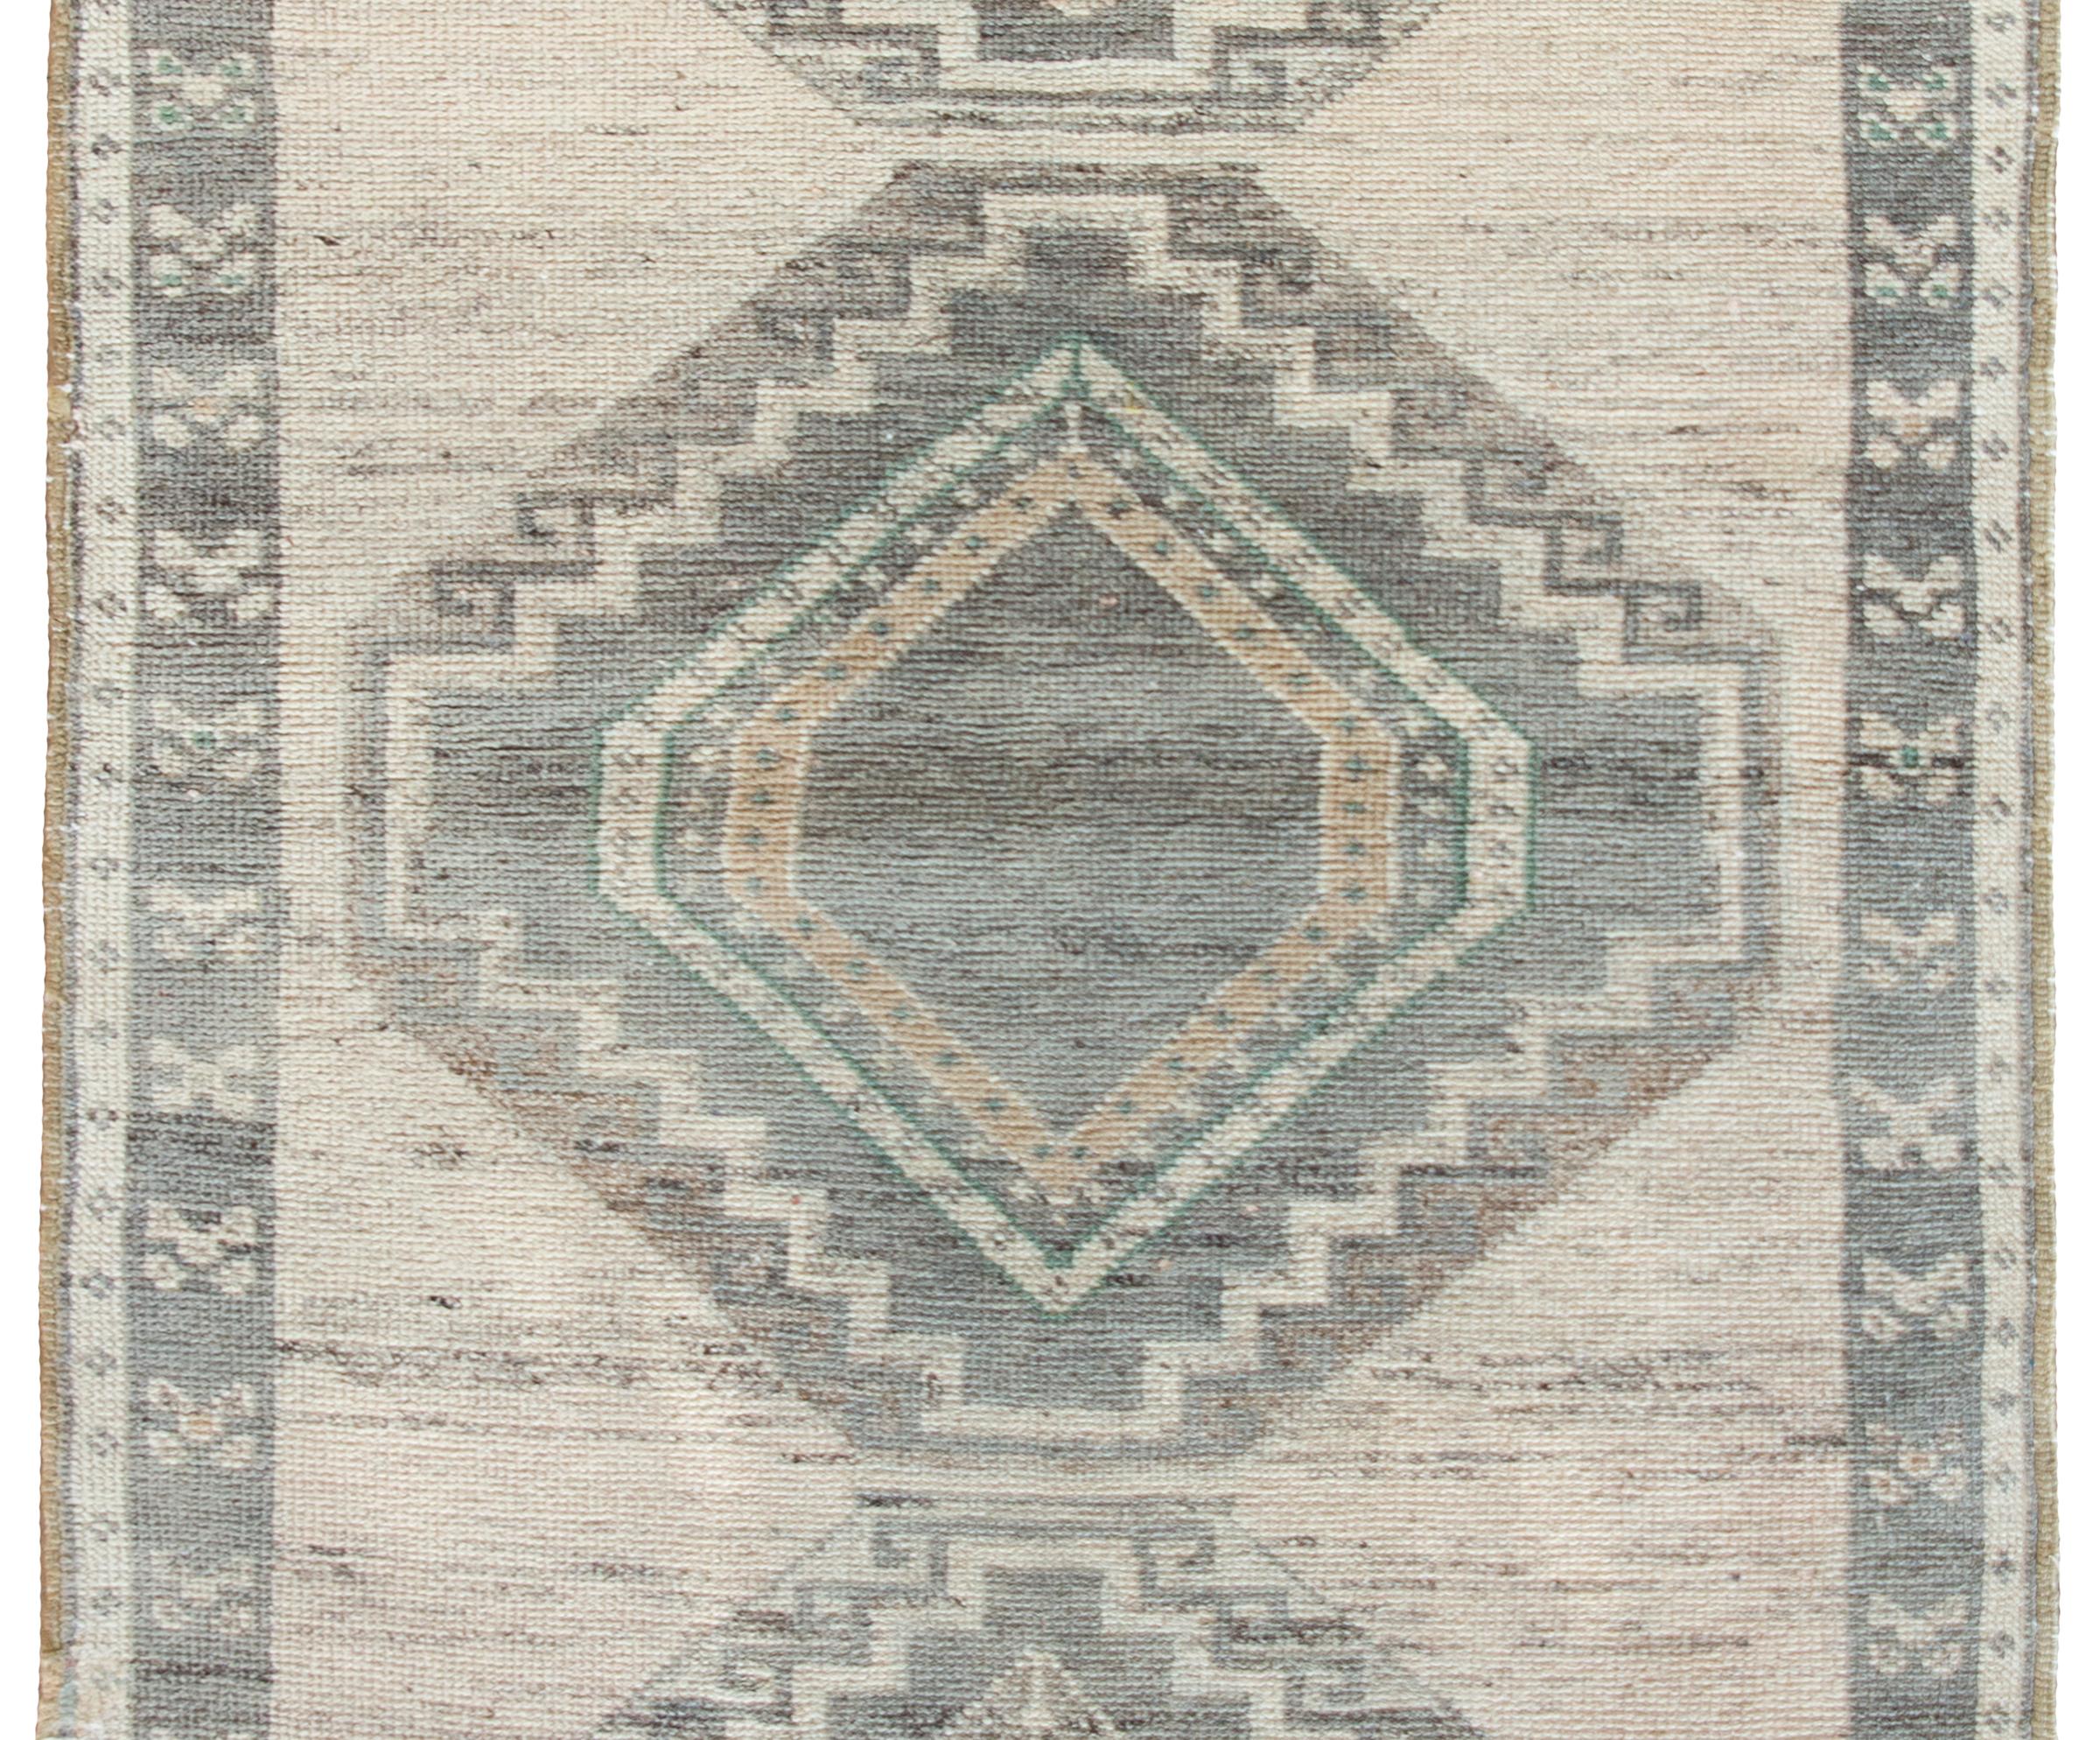 Un tapis serab persan vintage avec trois grands médaillons géométriques en forme de diamant entourés d'une bordure simple avec des fleurs stylisées encore plus géométriques, le tout tissé dans des tons simples de gris, de marron et de crème.  